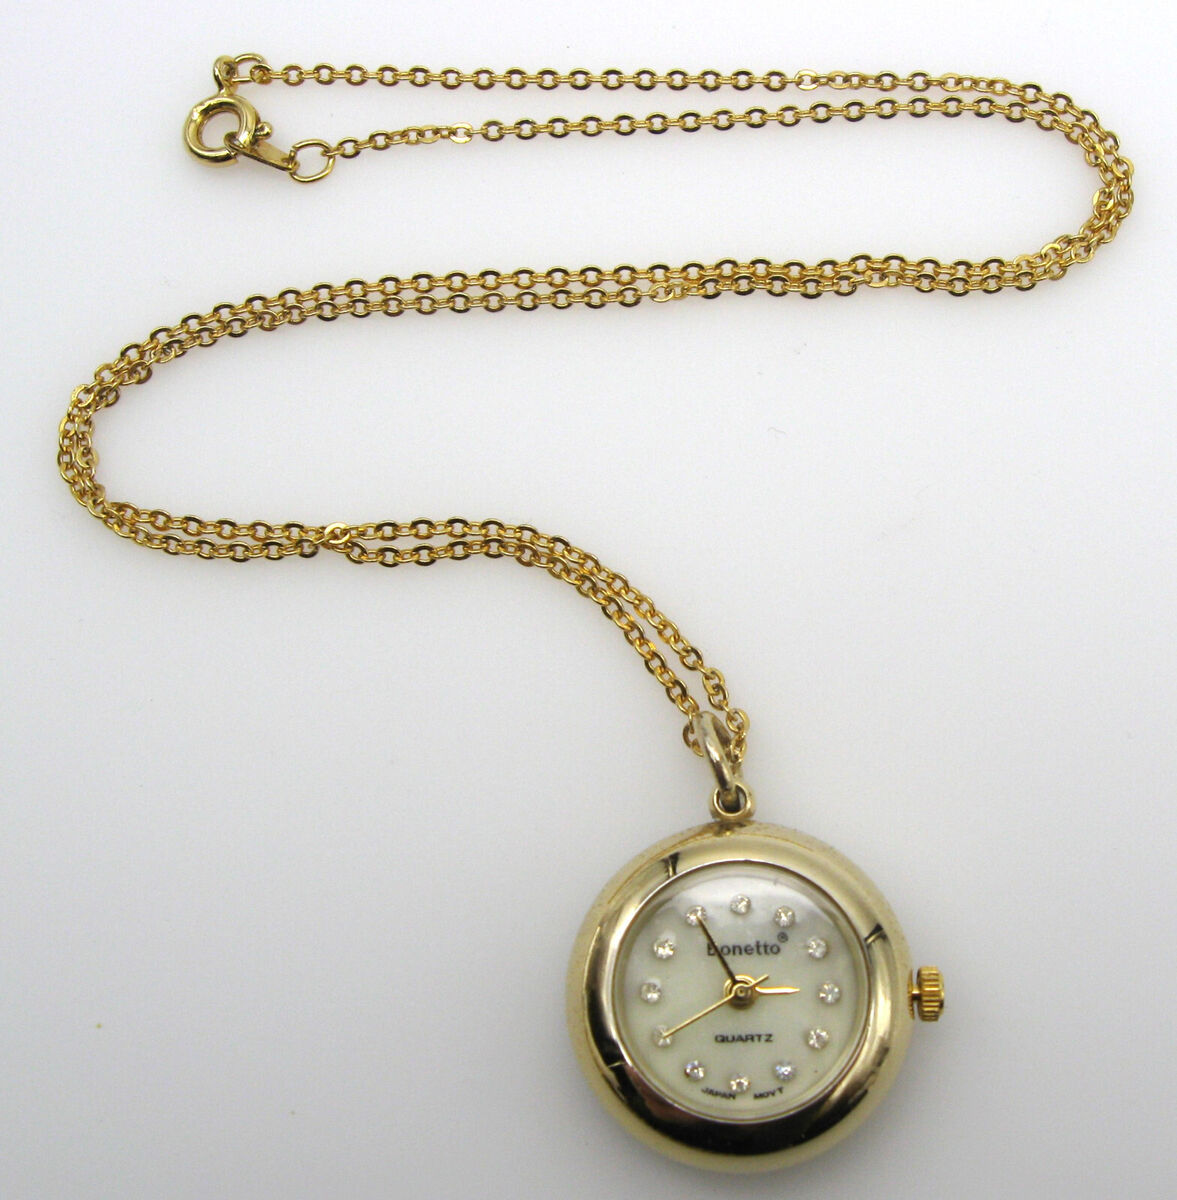 ◆QUARTZ Clowatアンティークネックレス アナログ時計ゴールドチェーン